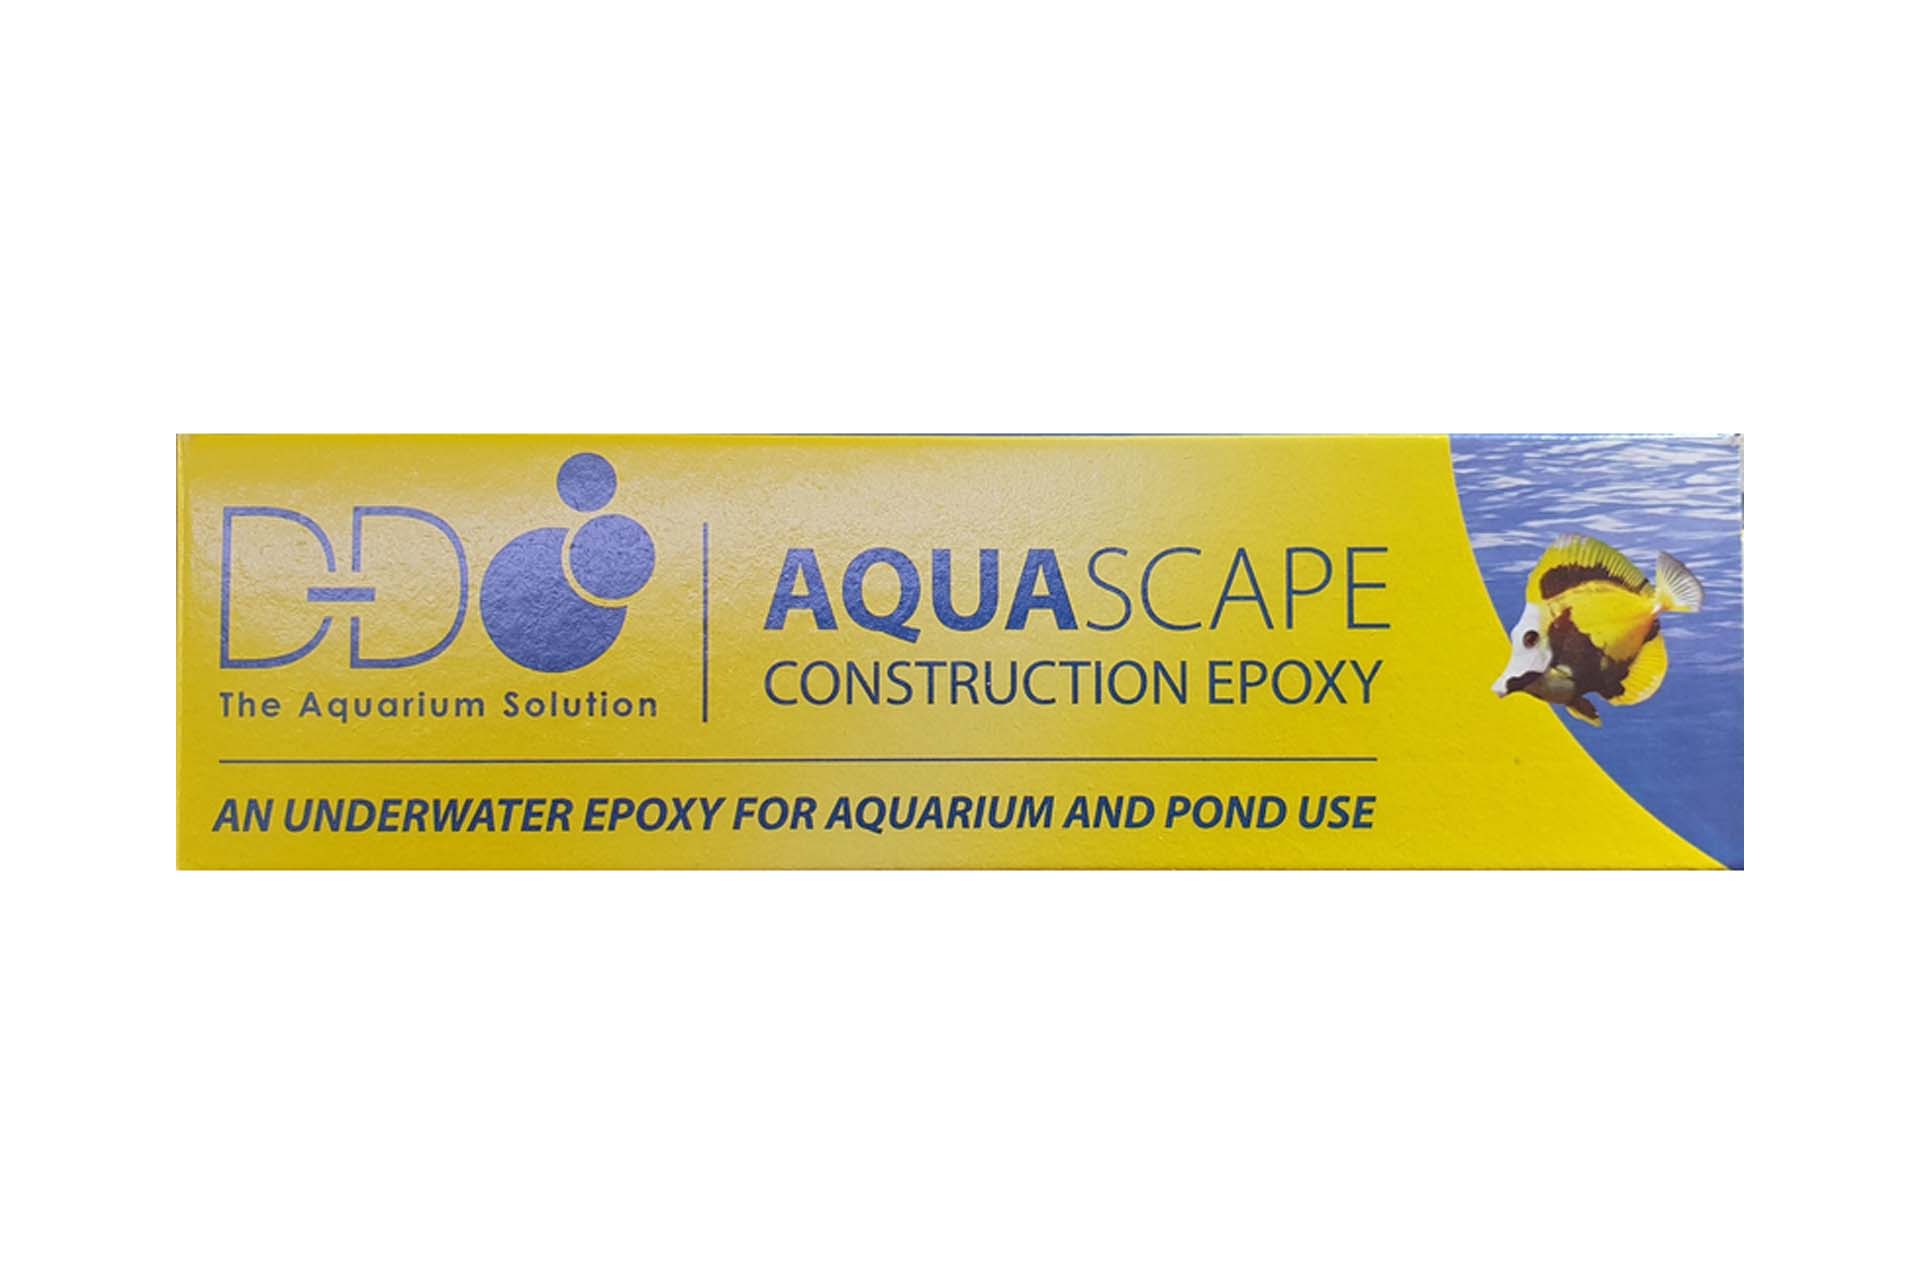 D-D H2Ocean AquaScape grey